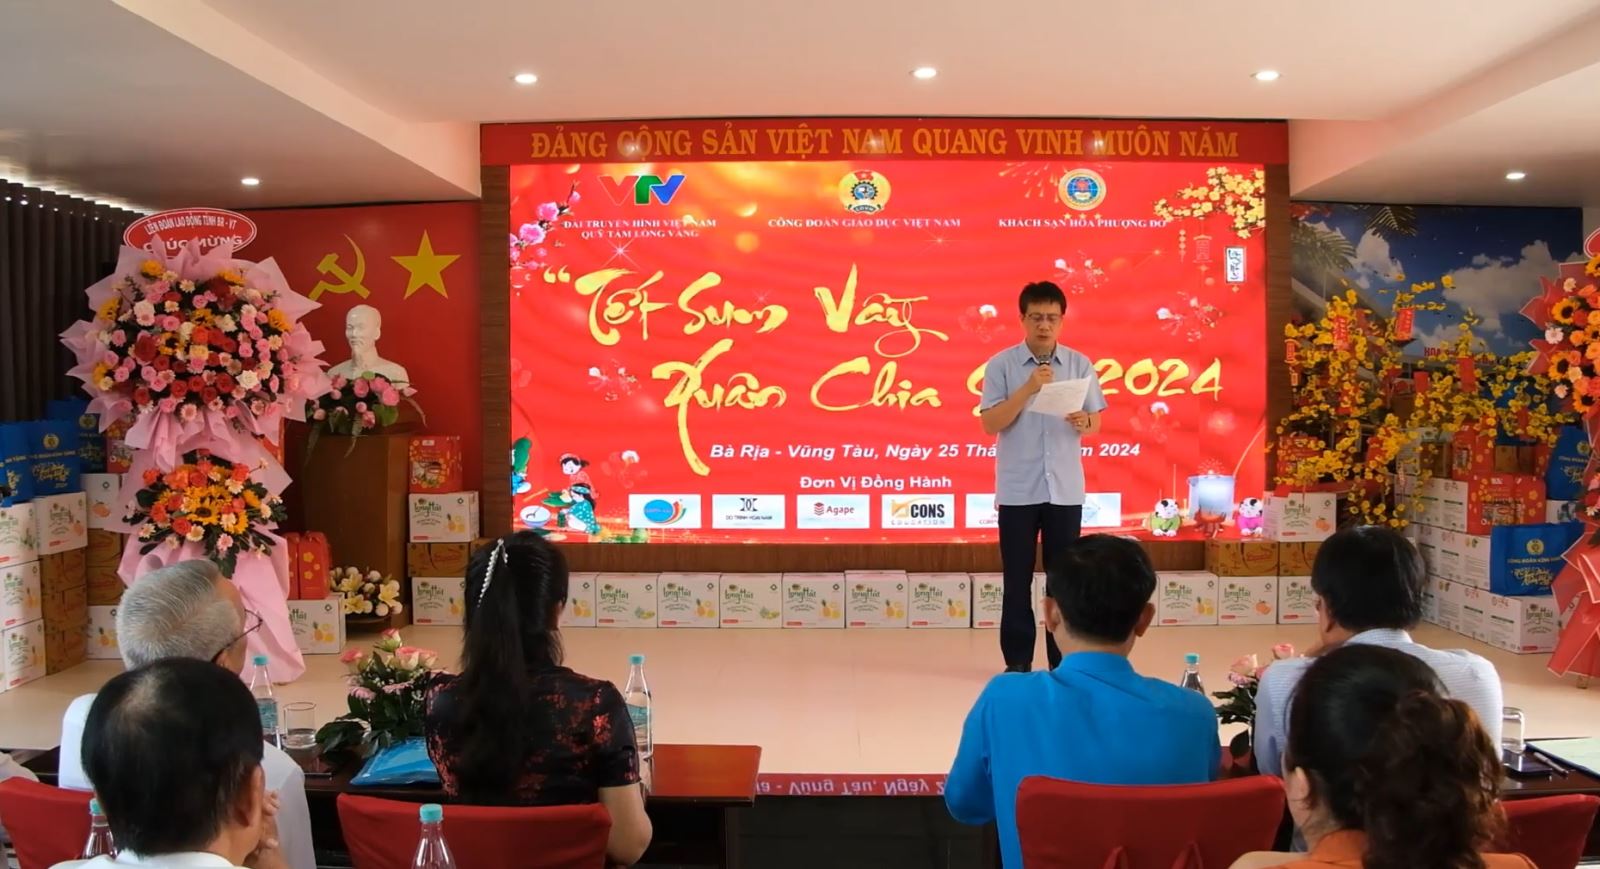 Công đoàn Giáo dục Việt Nam tổ chức chương trình “Tết Sum vầy - Xuân chia sẻ” khu vực phía Nam